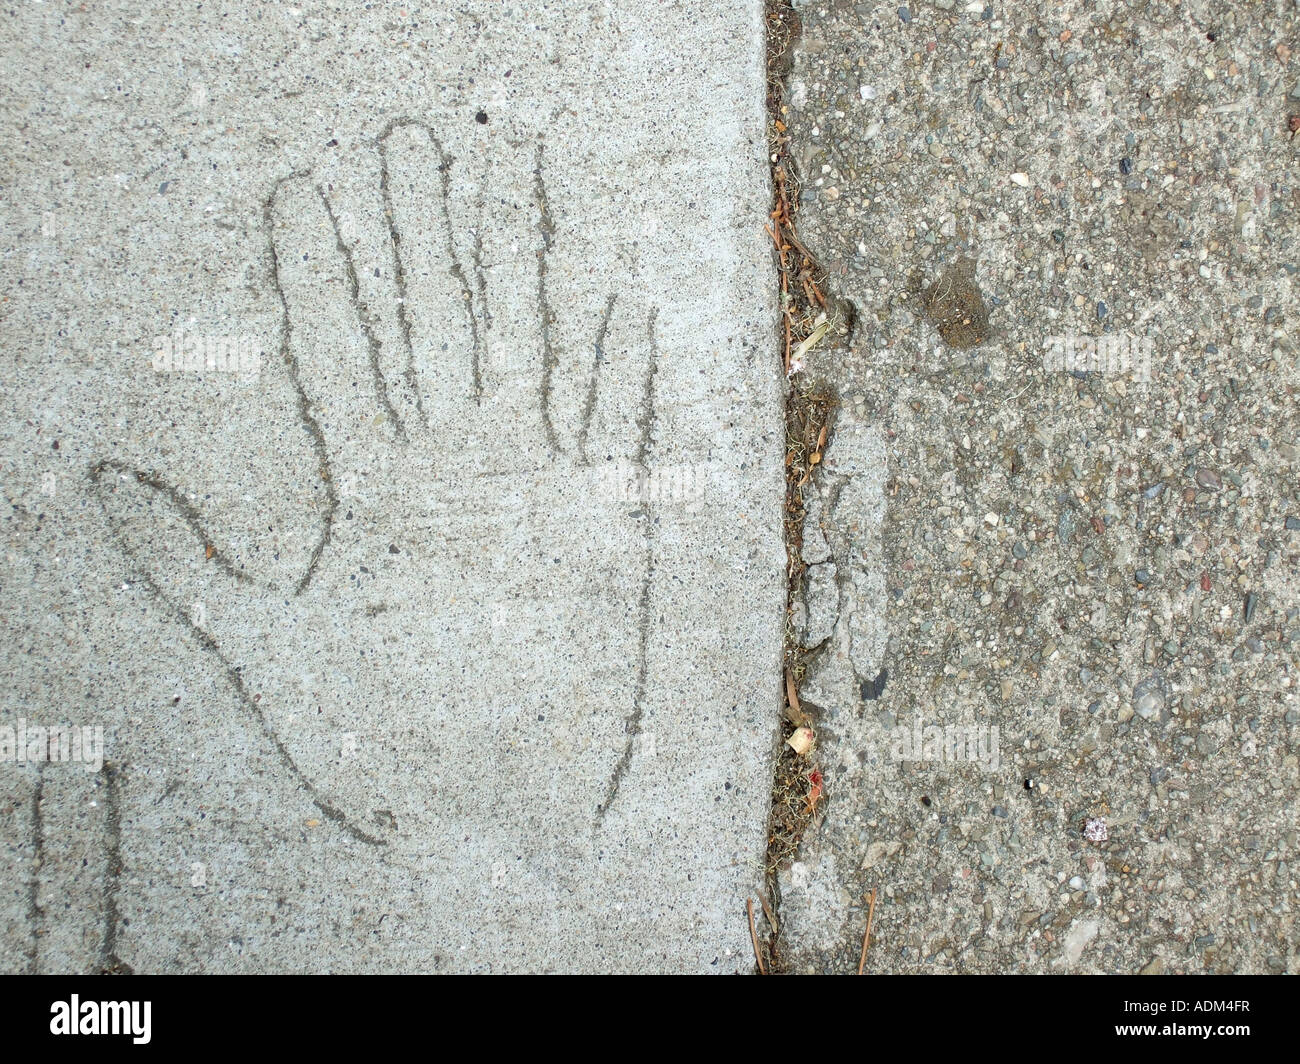 '^Esbozo de mano rayada en el cemento en la acera". Foto de stock